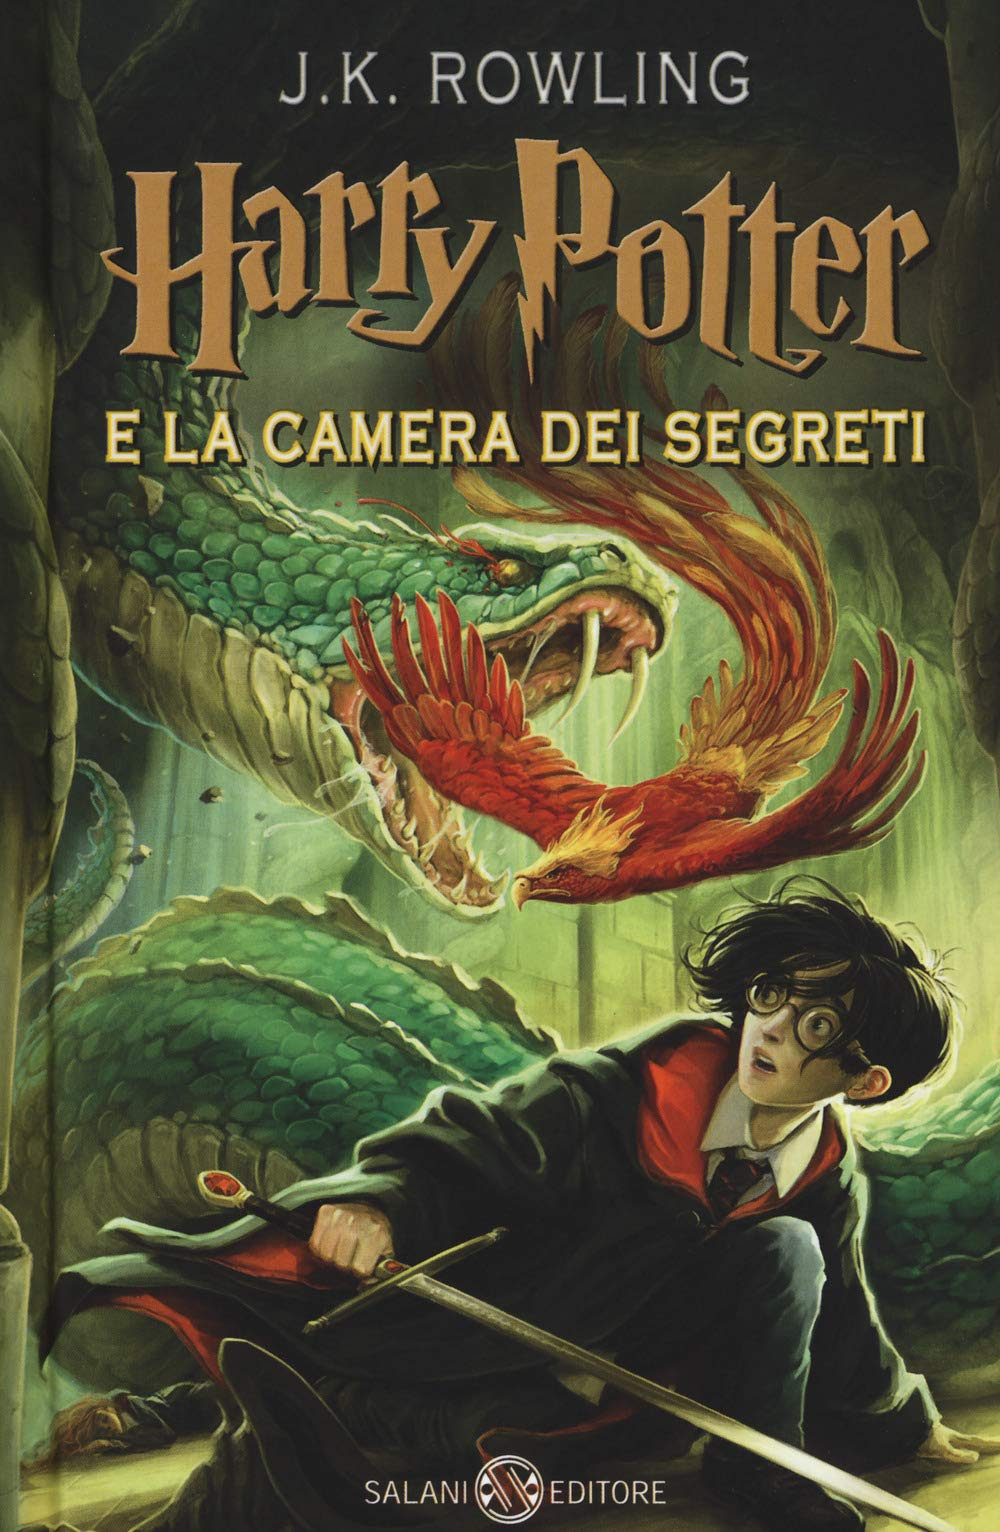 Harry Potter e la camera dei segreti in Kindle/PDF/EPUB